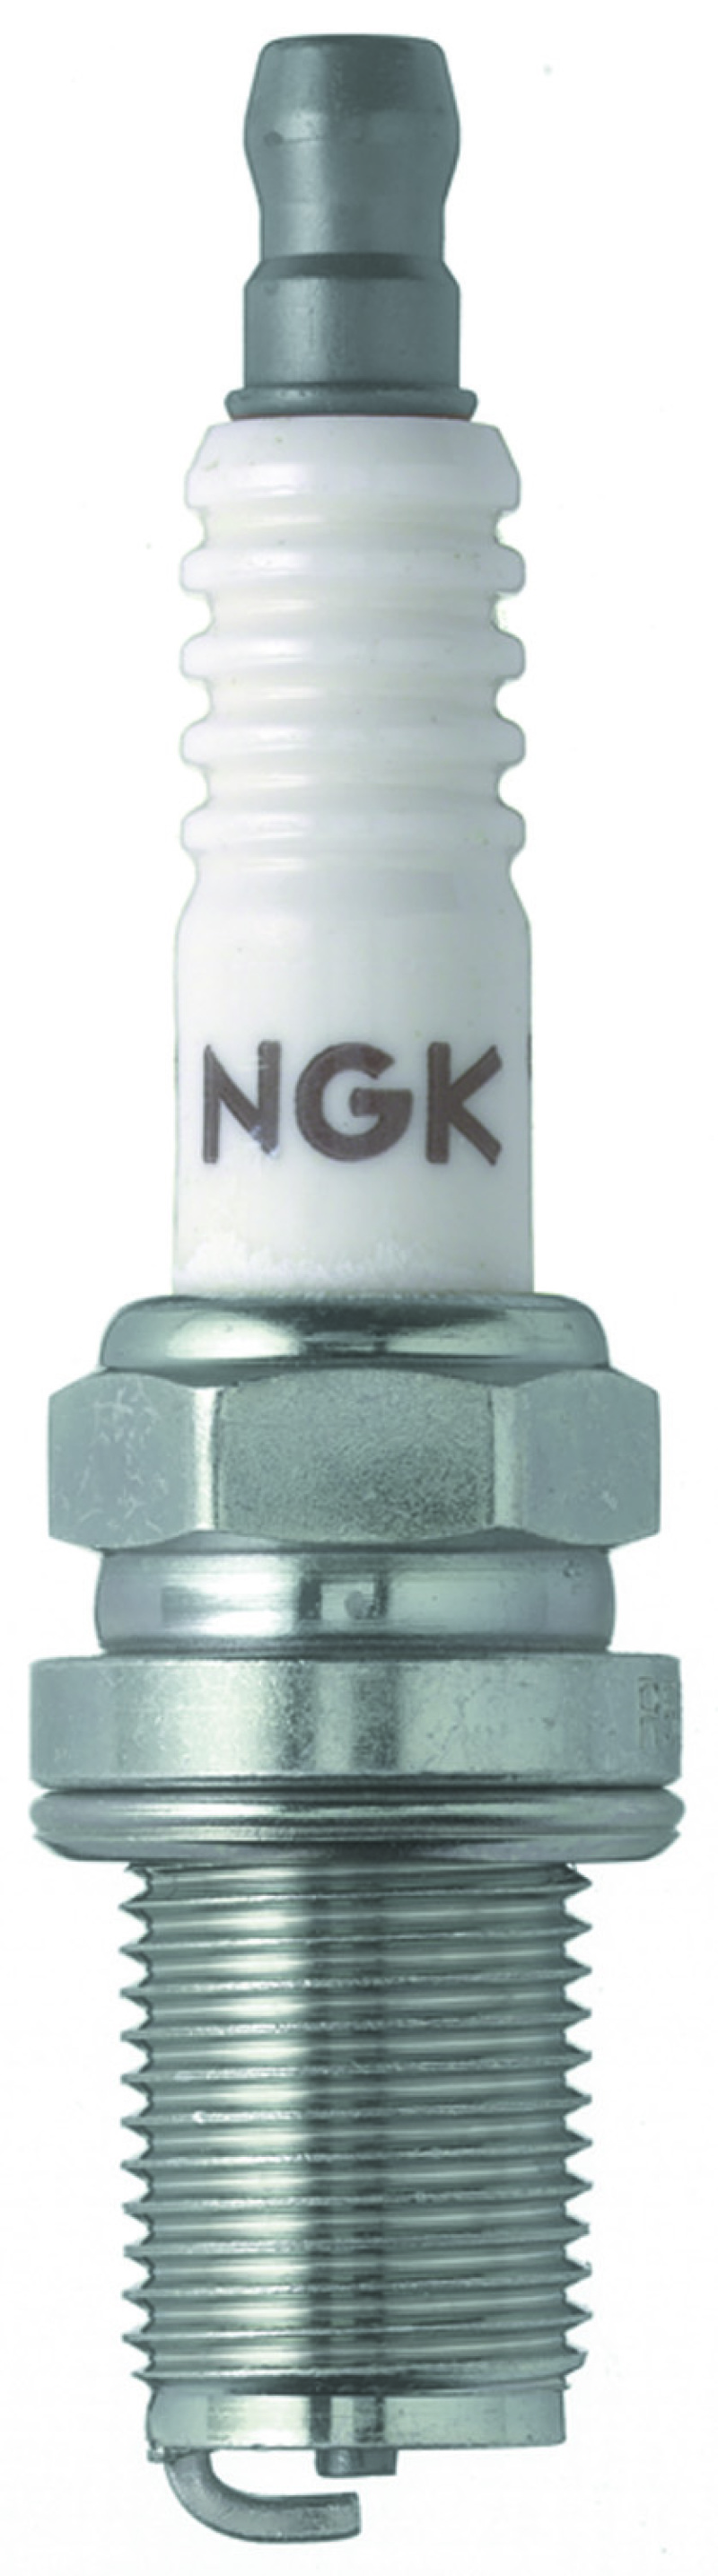 NGK Racing Spark Plug Box of 4 (R6601-11) - 4586